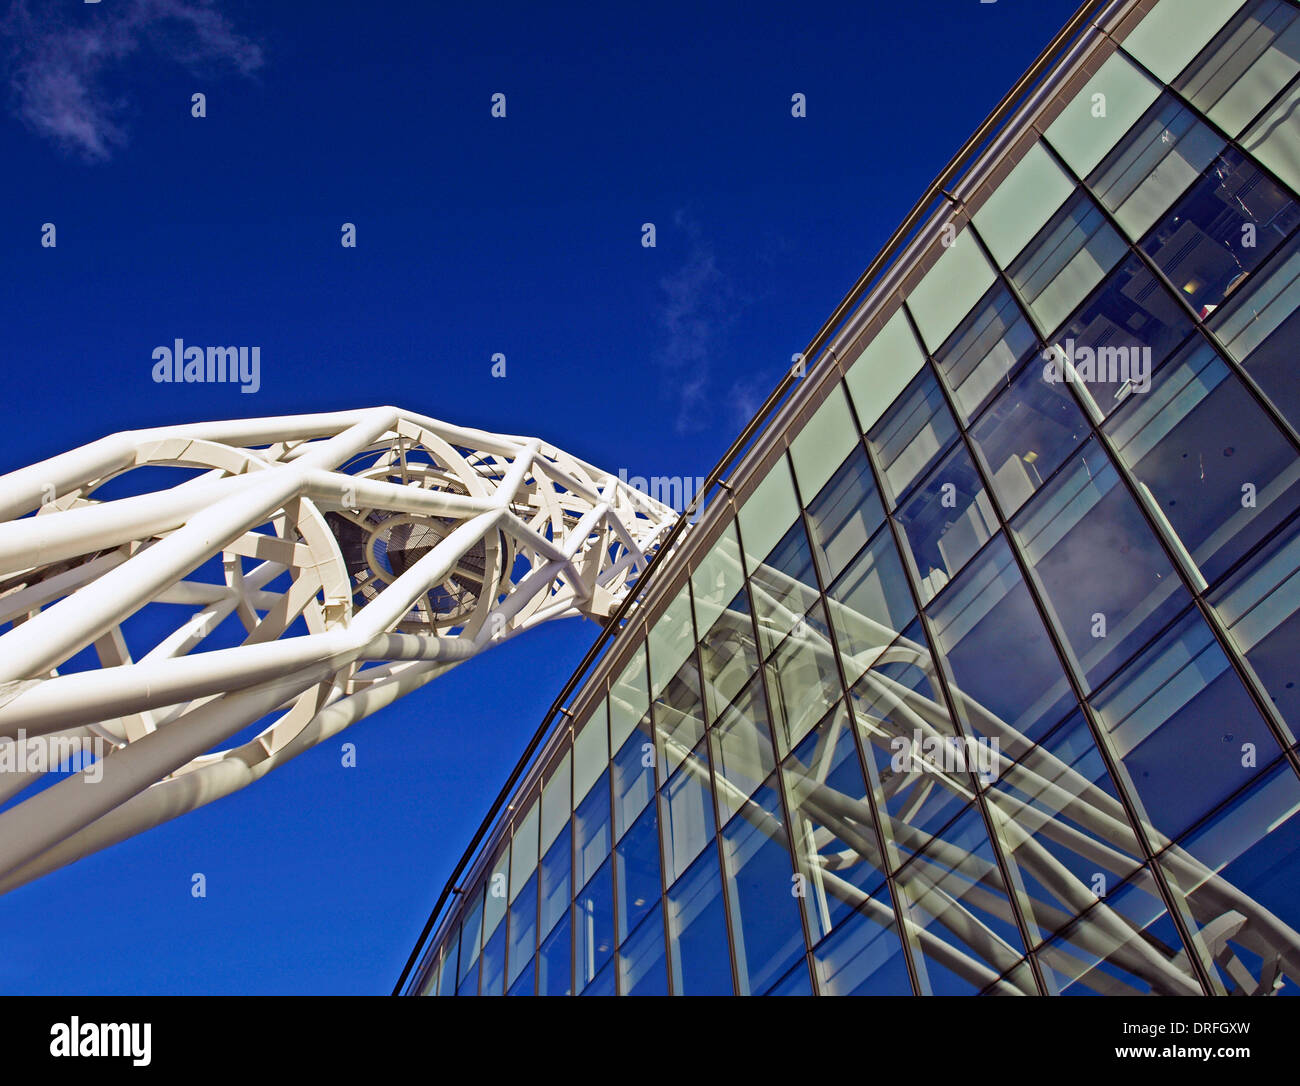 Dettaglio dallo stadio di Wembley che mostra l'arco, London Borough of Brent, London, England, Regno Unito Foto Stock